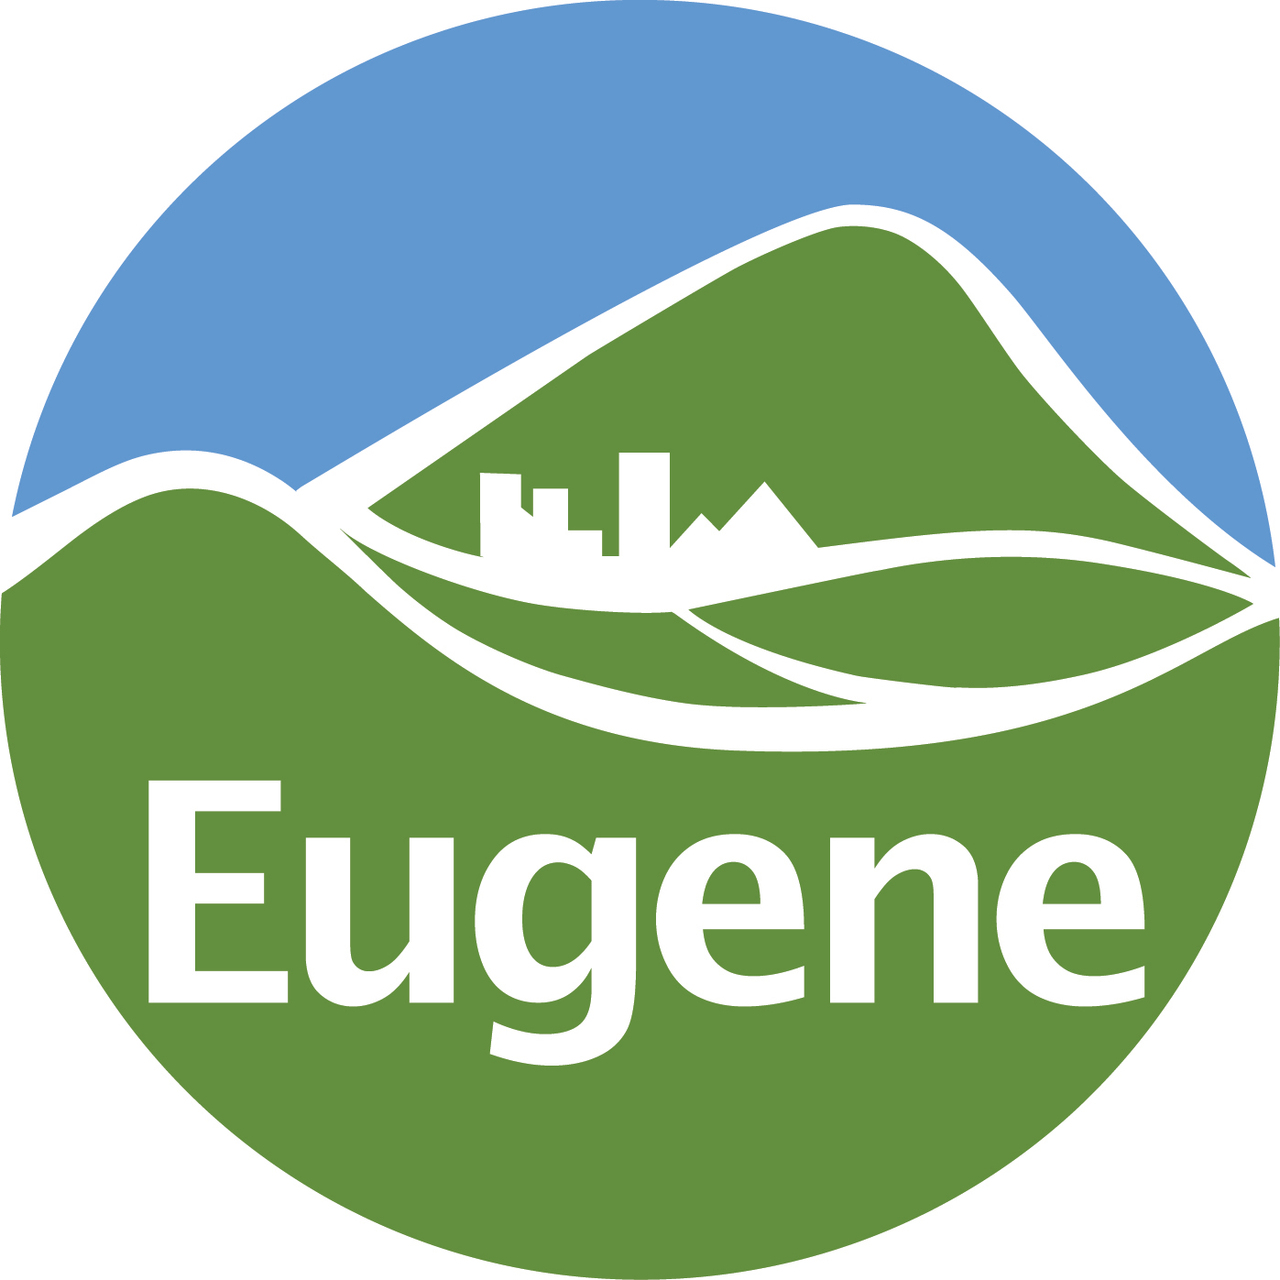 City of eugene